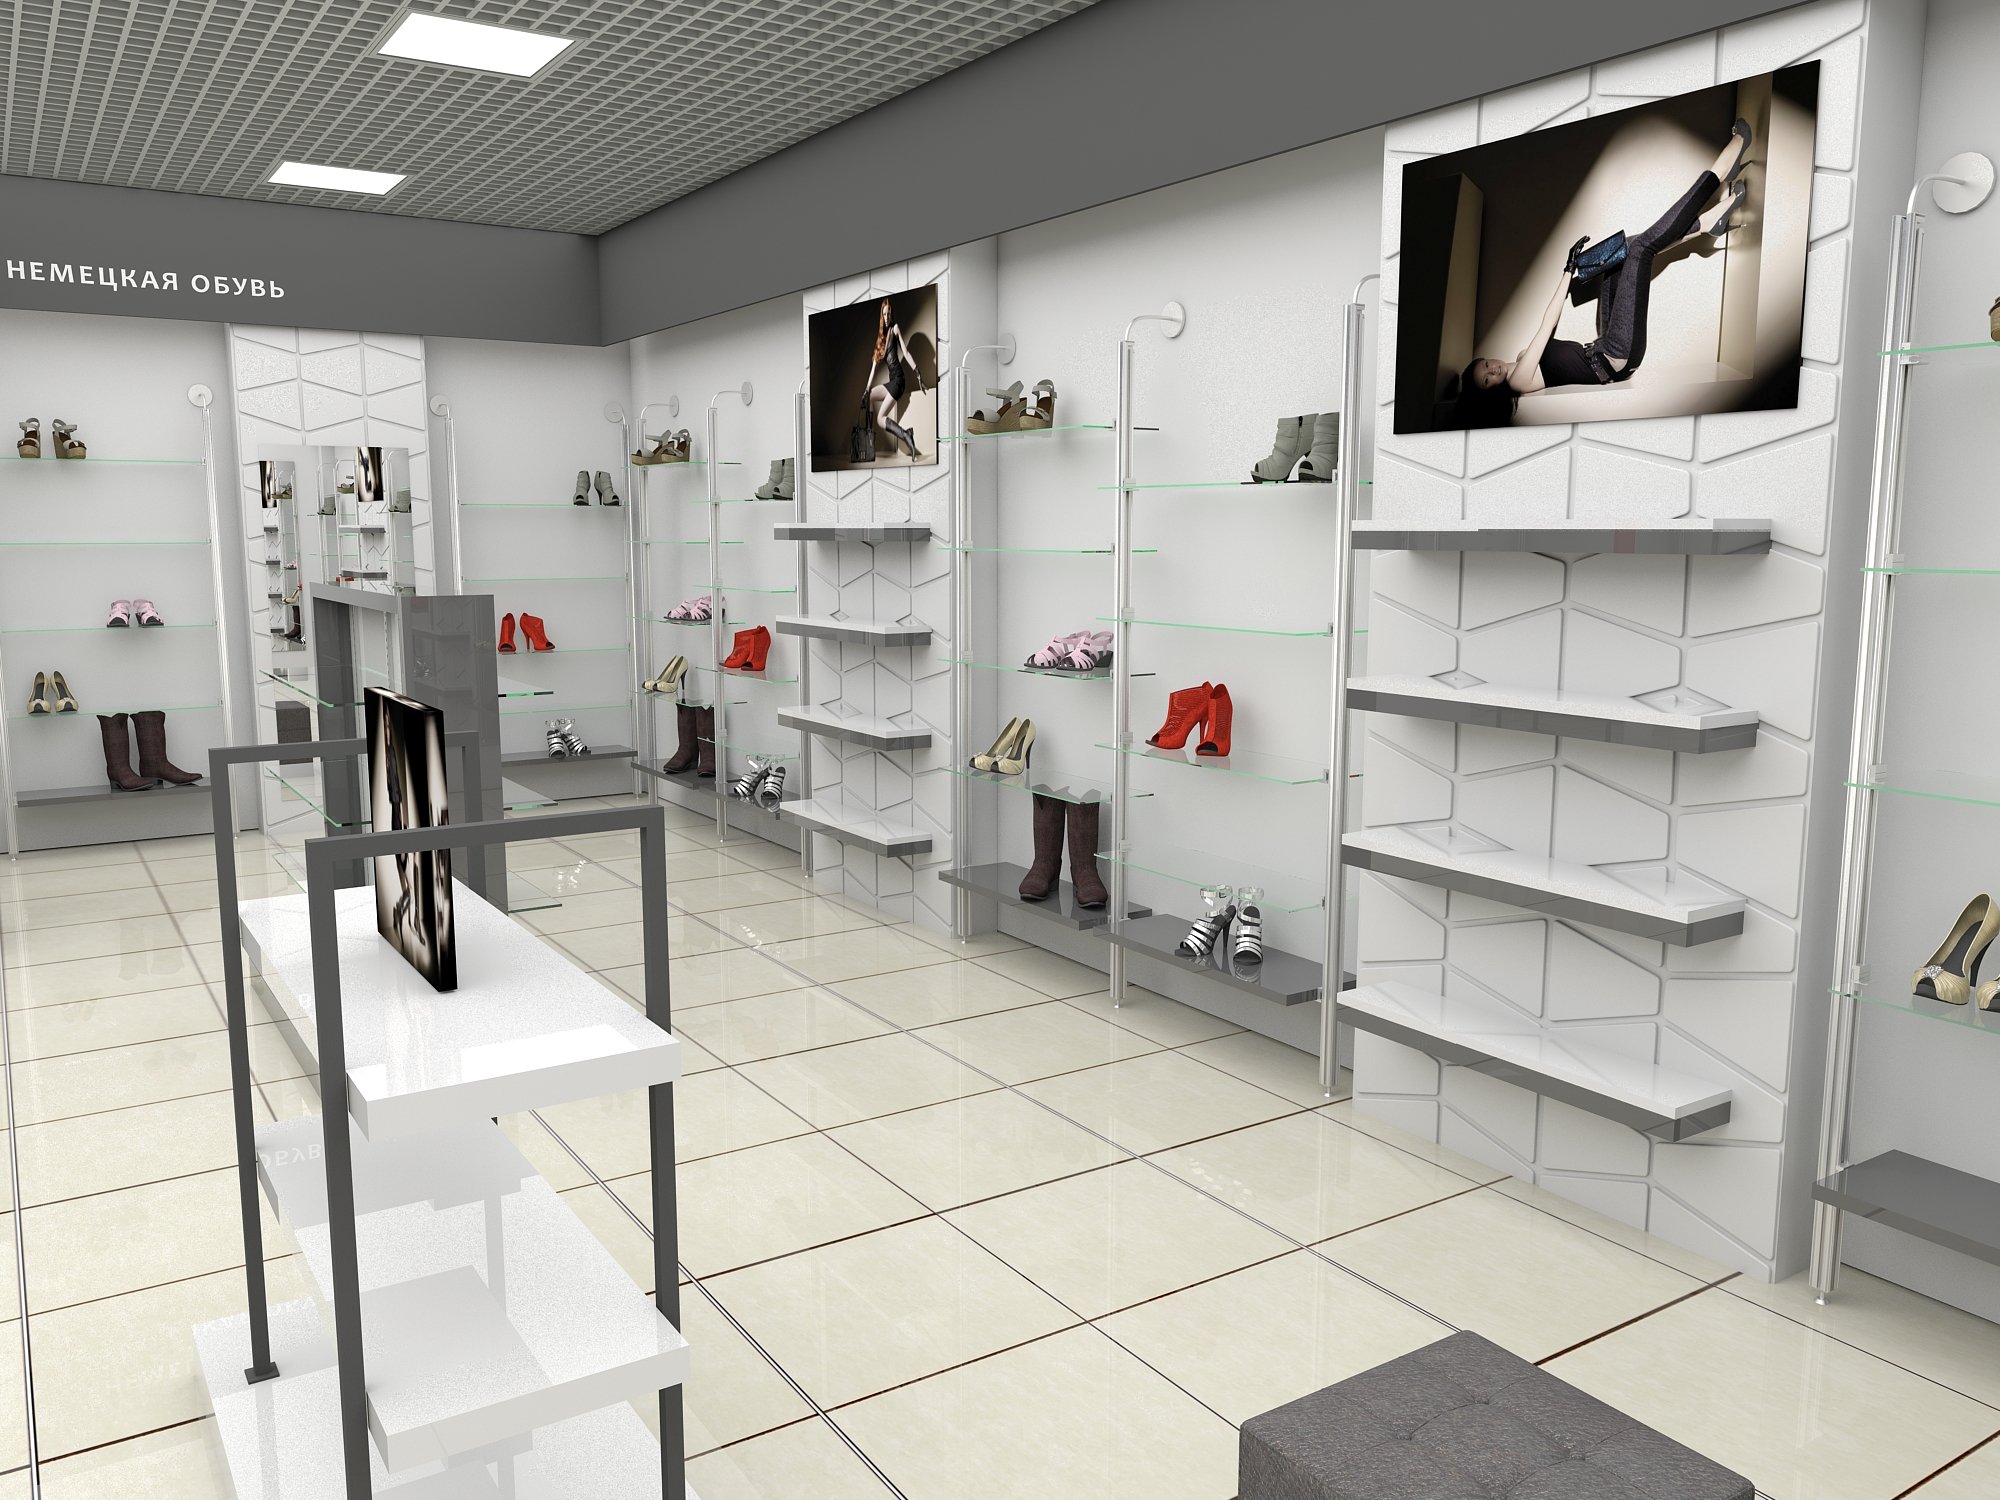 X 1 shop. Интерьер магазина обуви. Проект магазина обуви. Оборудование для магазина обуви. Дизайн обувного магазина.